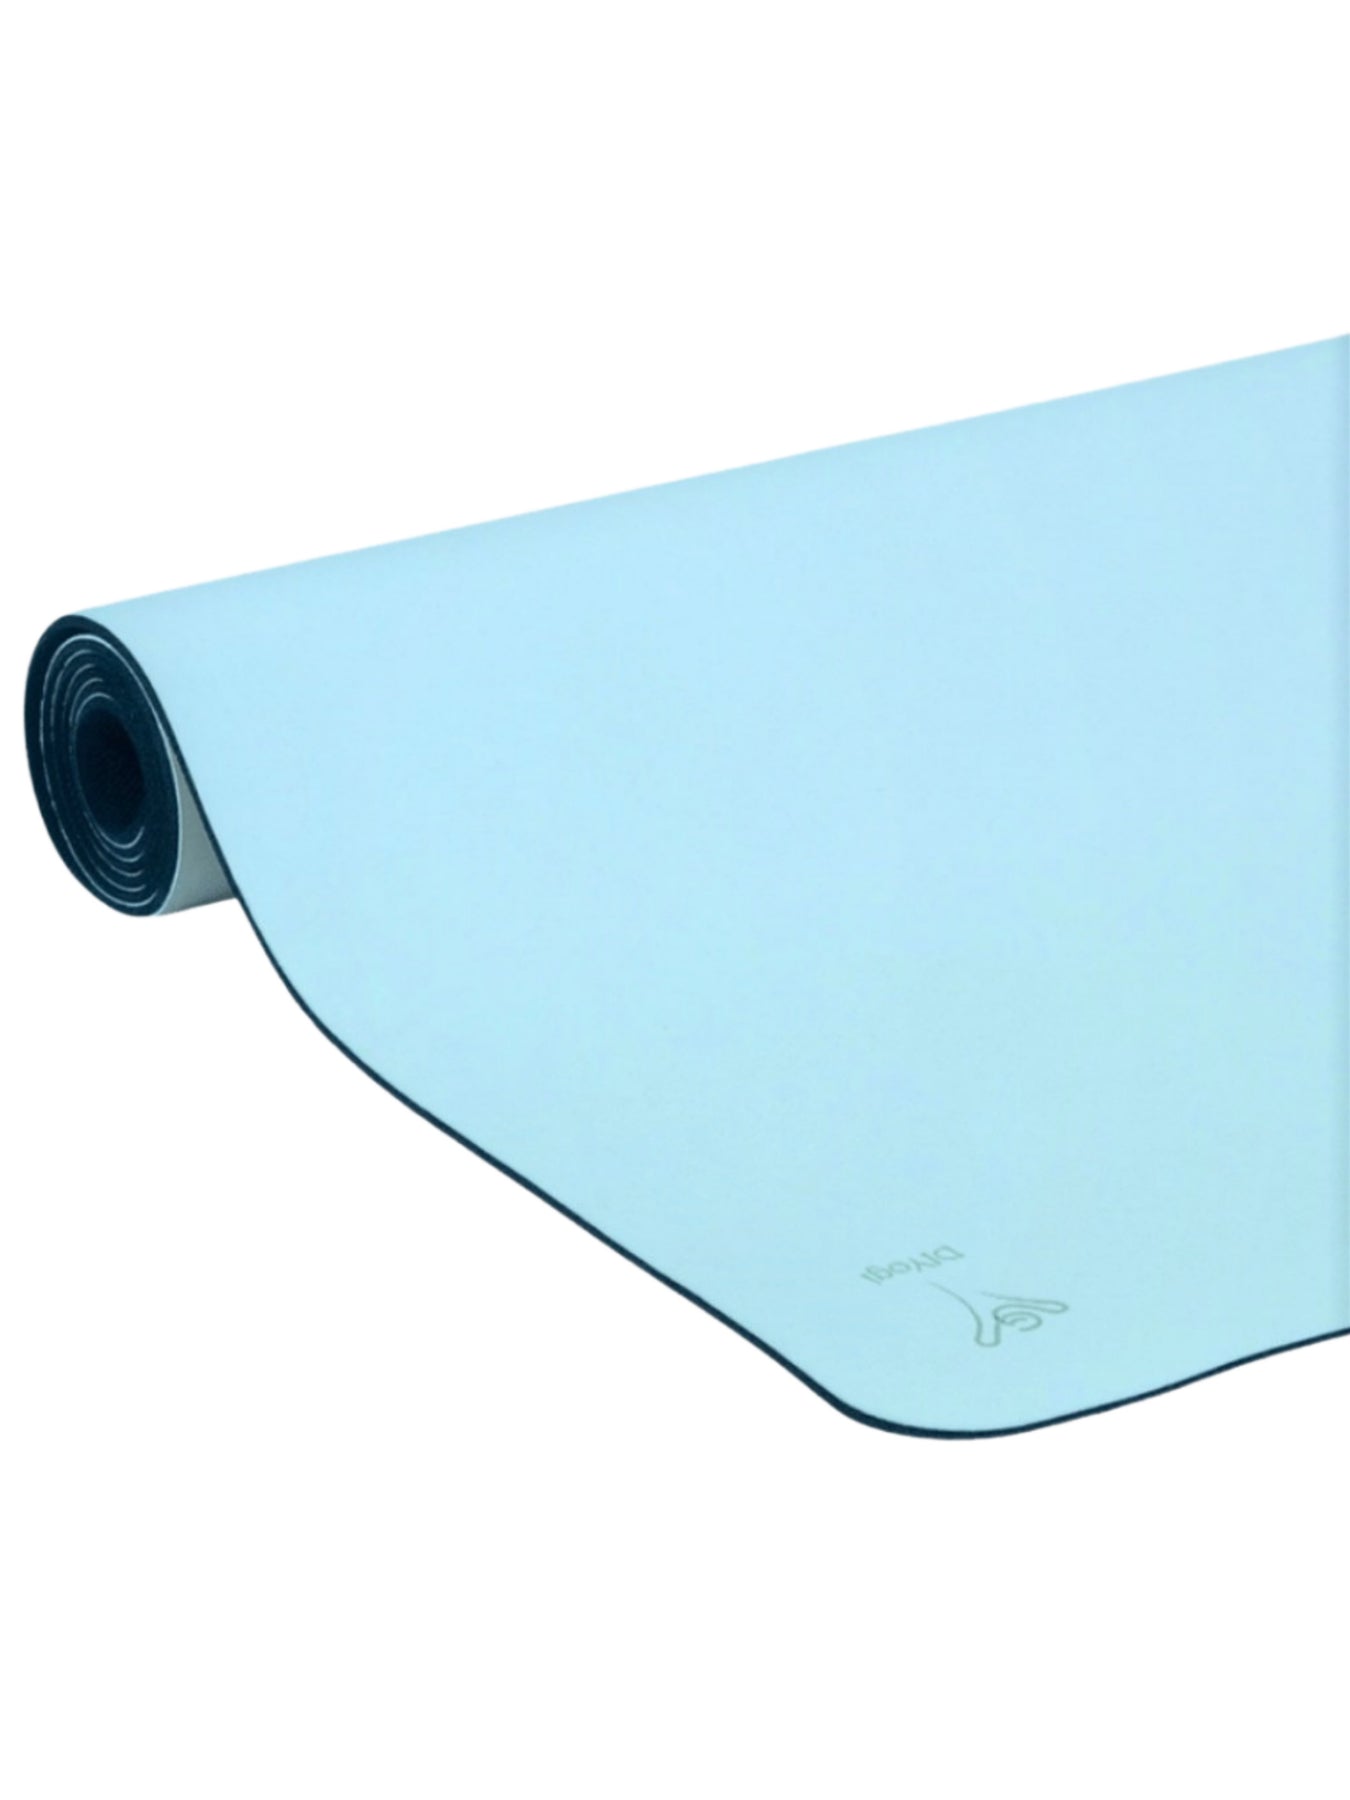 DIYogi Light Blue Yoga Mat  The Best Grip in A Yoga Mat –